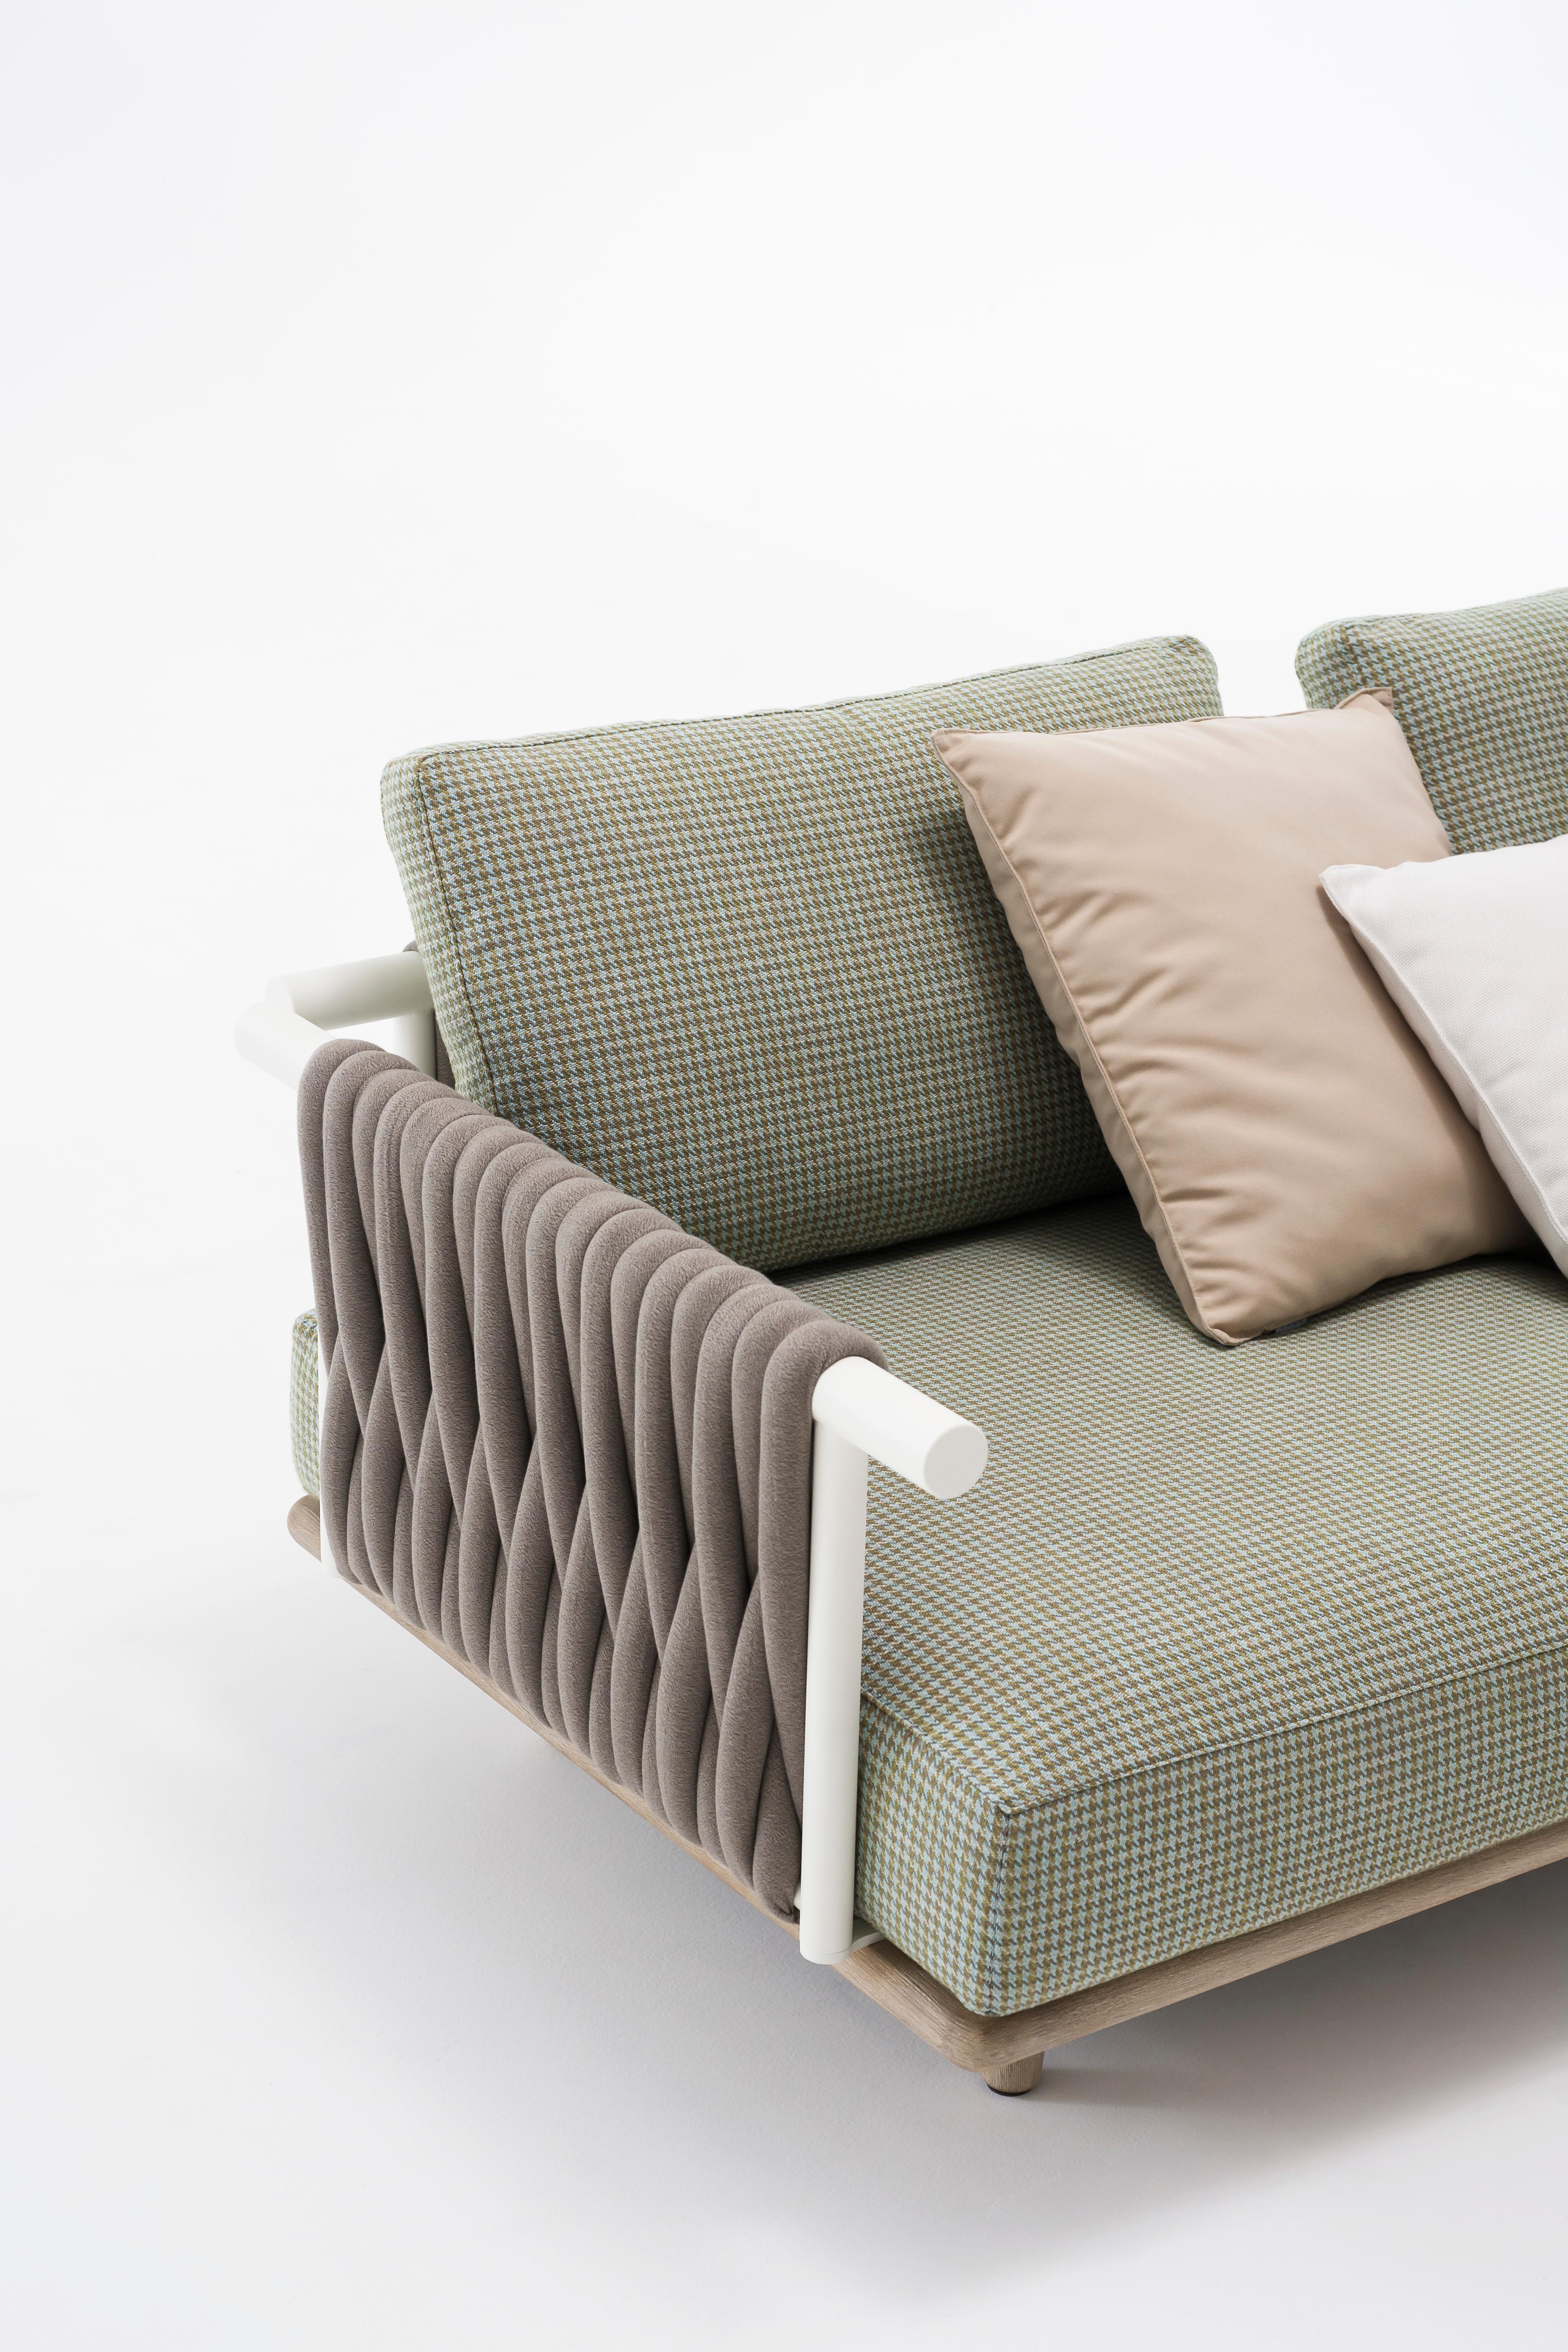 Eden ist ein großes, komfortables Outdoor-Sofa, das sich für Momente der totalen Entspannung eignet, großzügig in der Form und vor allem in der Tiefe und Dicke der Kissen.
Der Sockel besteht aus Teakholz, das in der Farbe Weather Resistant weiß